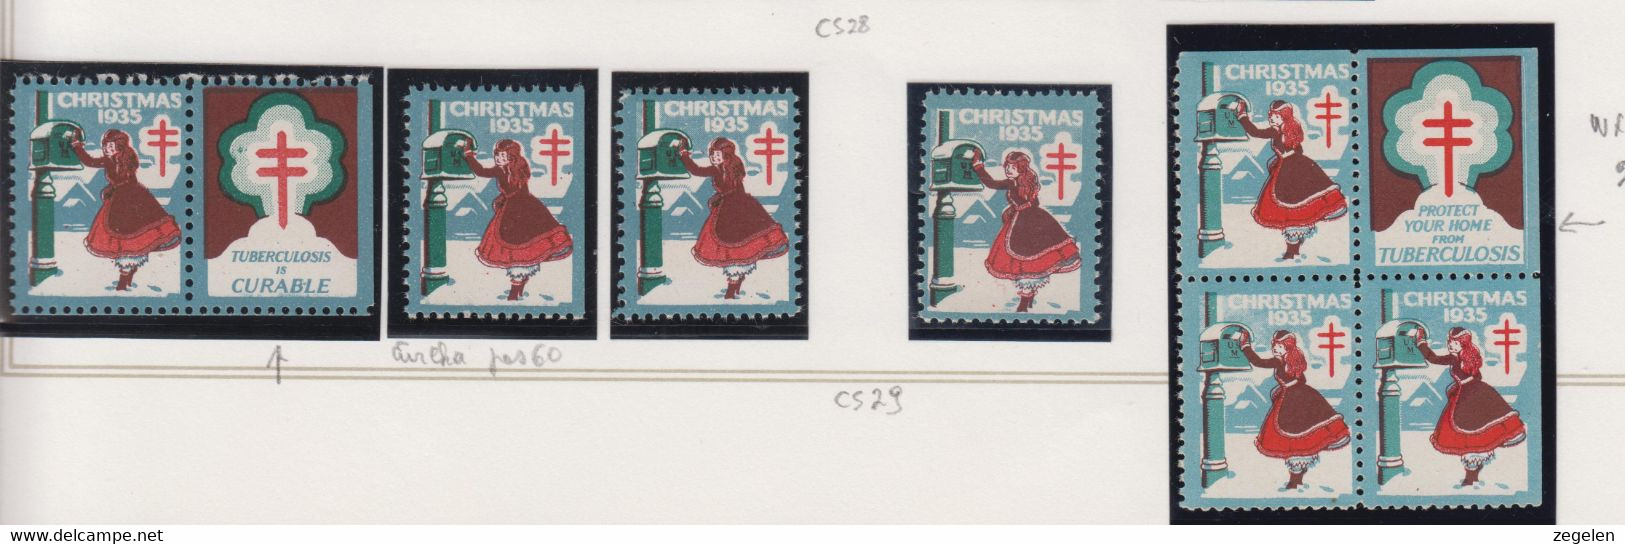 Verenigde Staten Kerstvignet Scott-cat. Jaar 1935 CS29 WX76/77 1 Printermark/drukkenmerk + 2 Versch.vignetten - Sin Clasificación